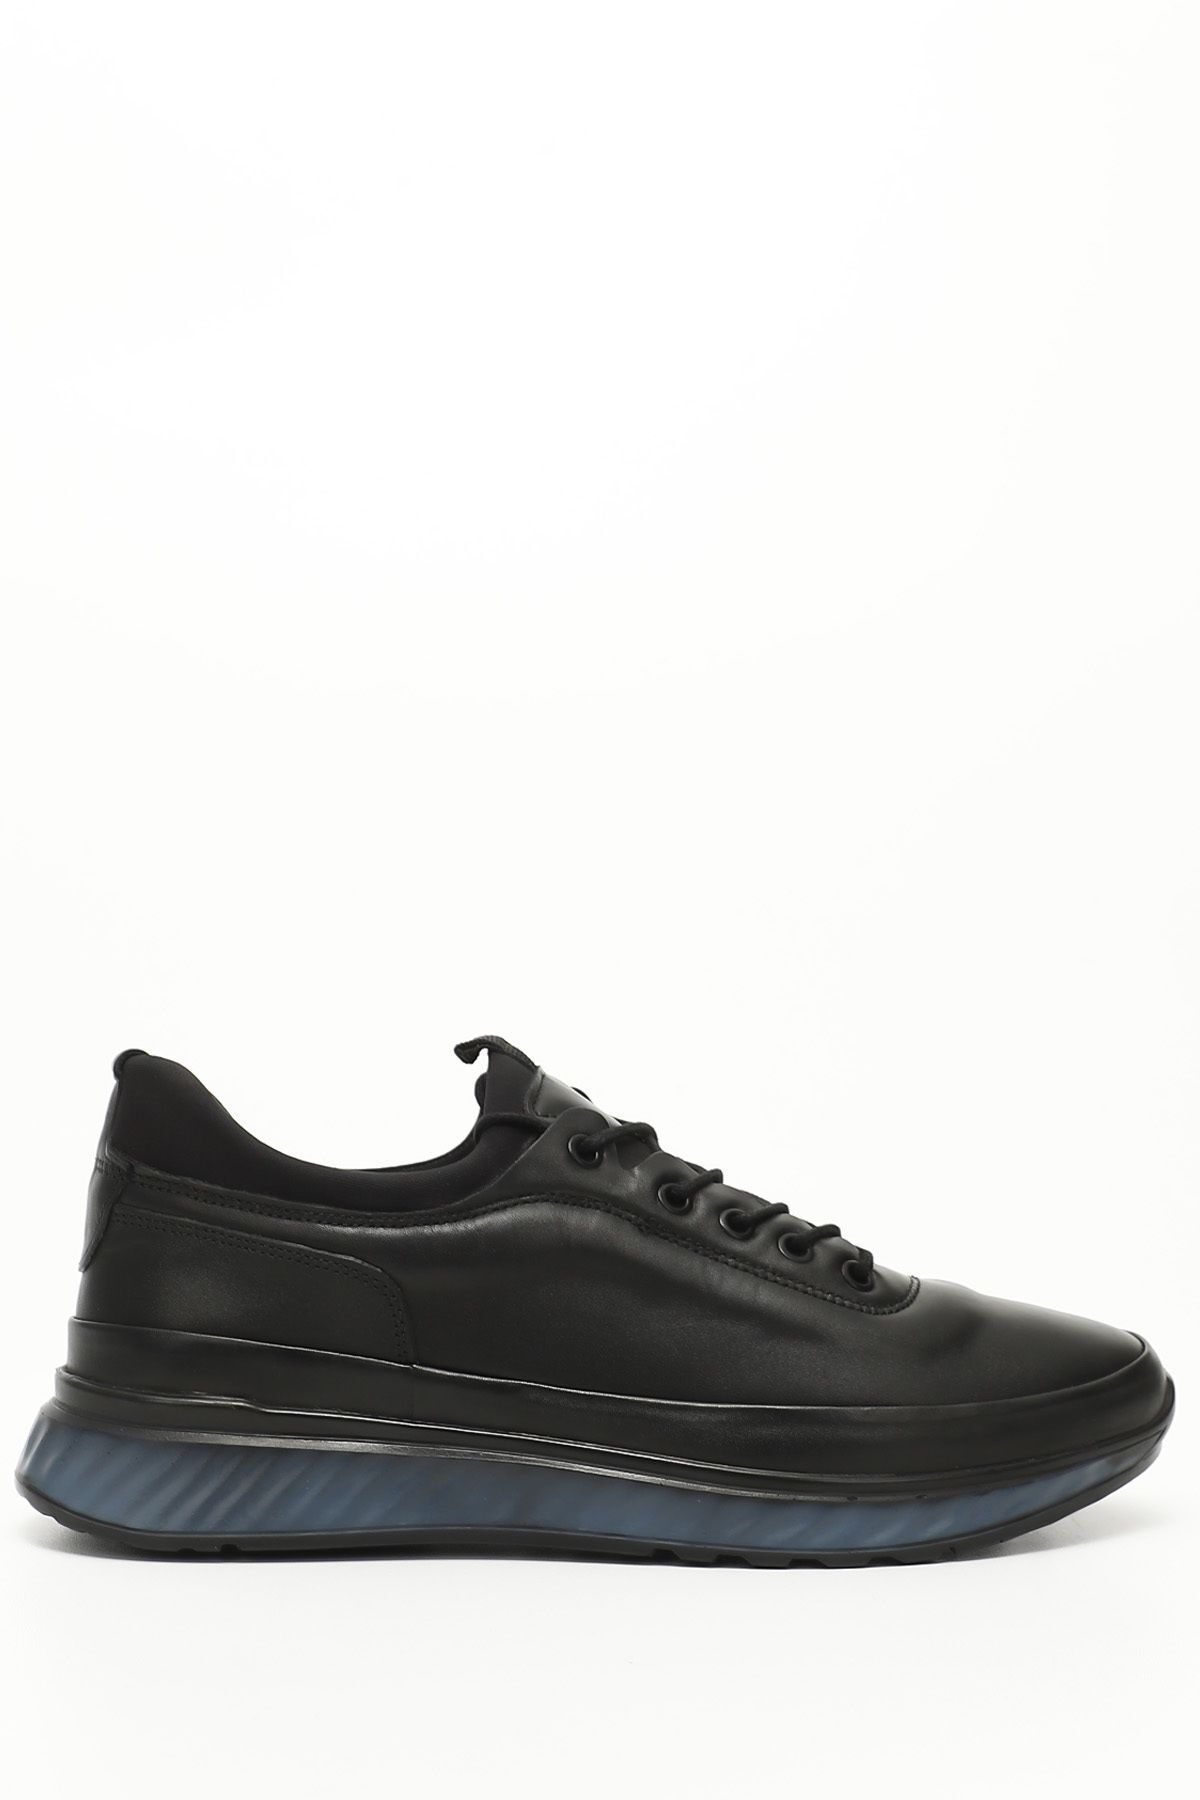 GÖNDERİ(R) Siyah Gön Hakiki Deri Bağcıklı Jel Tabanlıklı Erkek Günlük Sneaker 01909